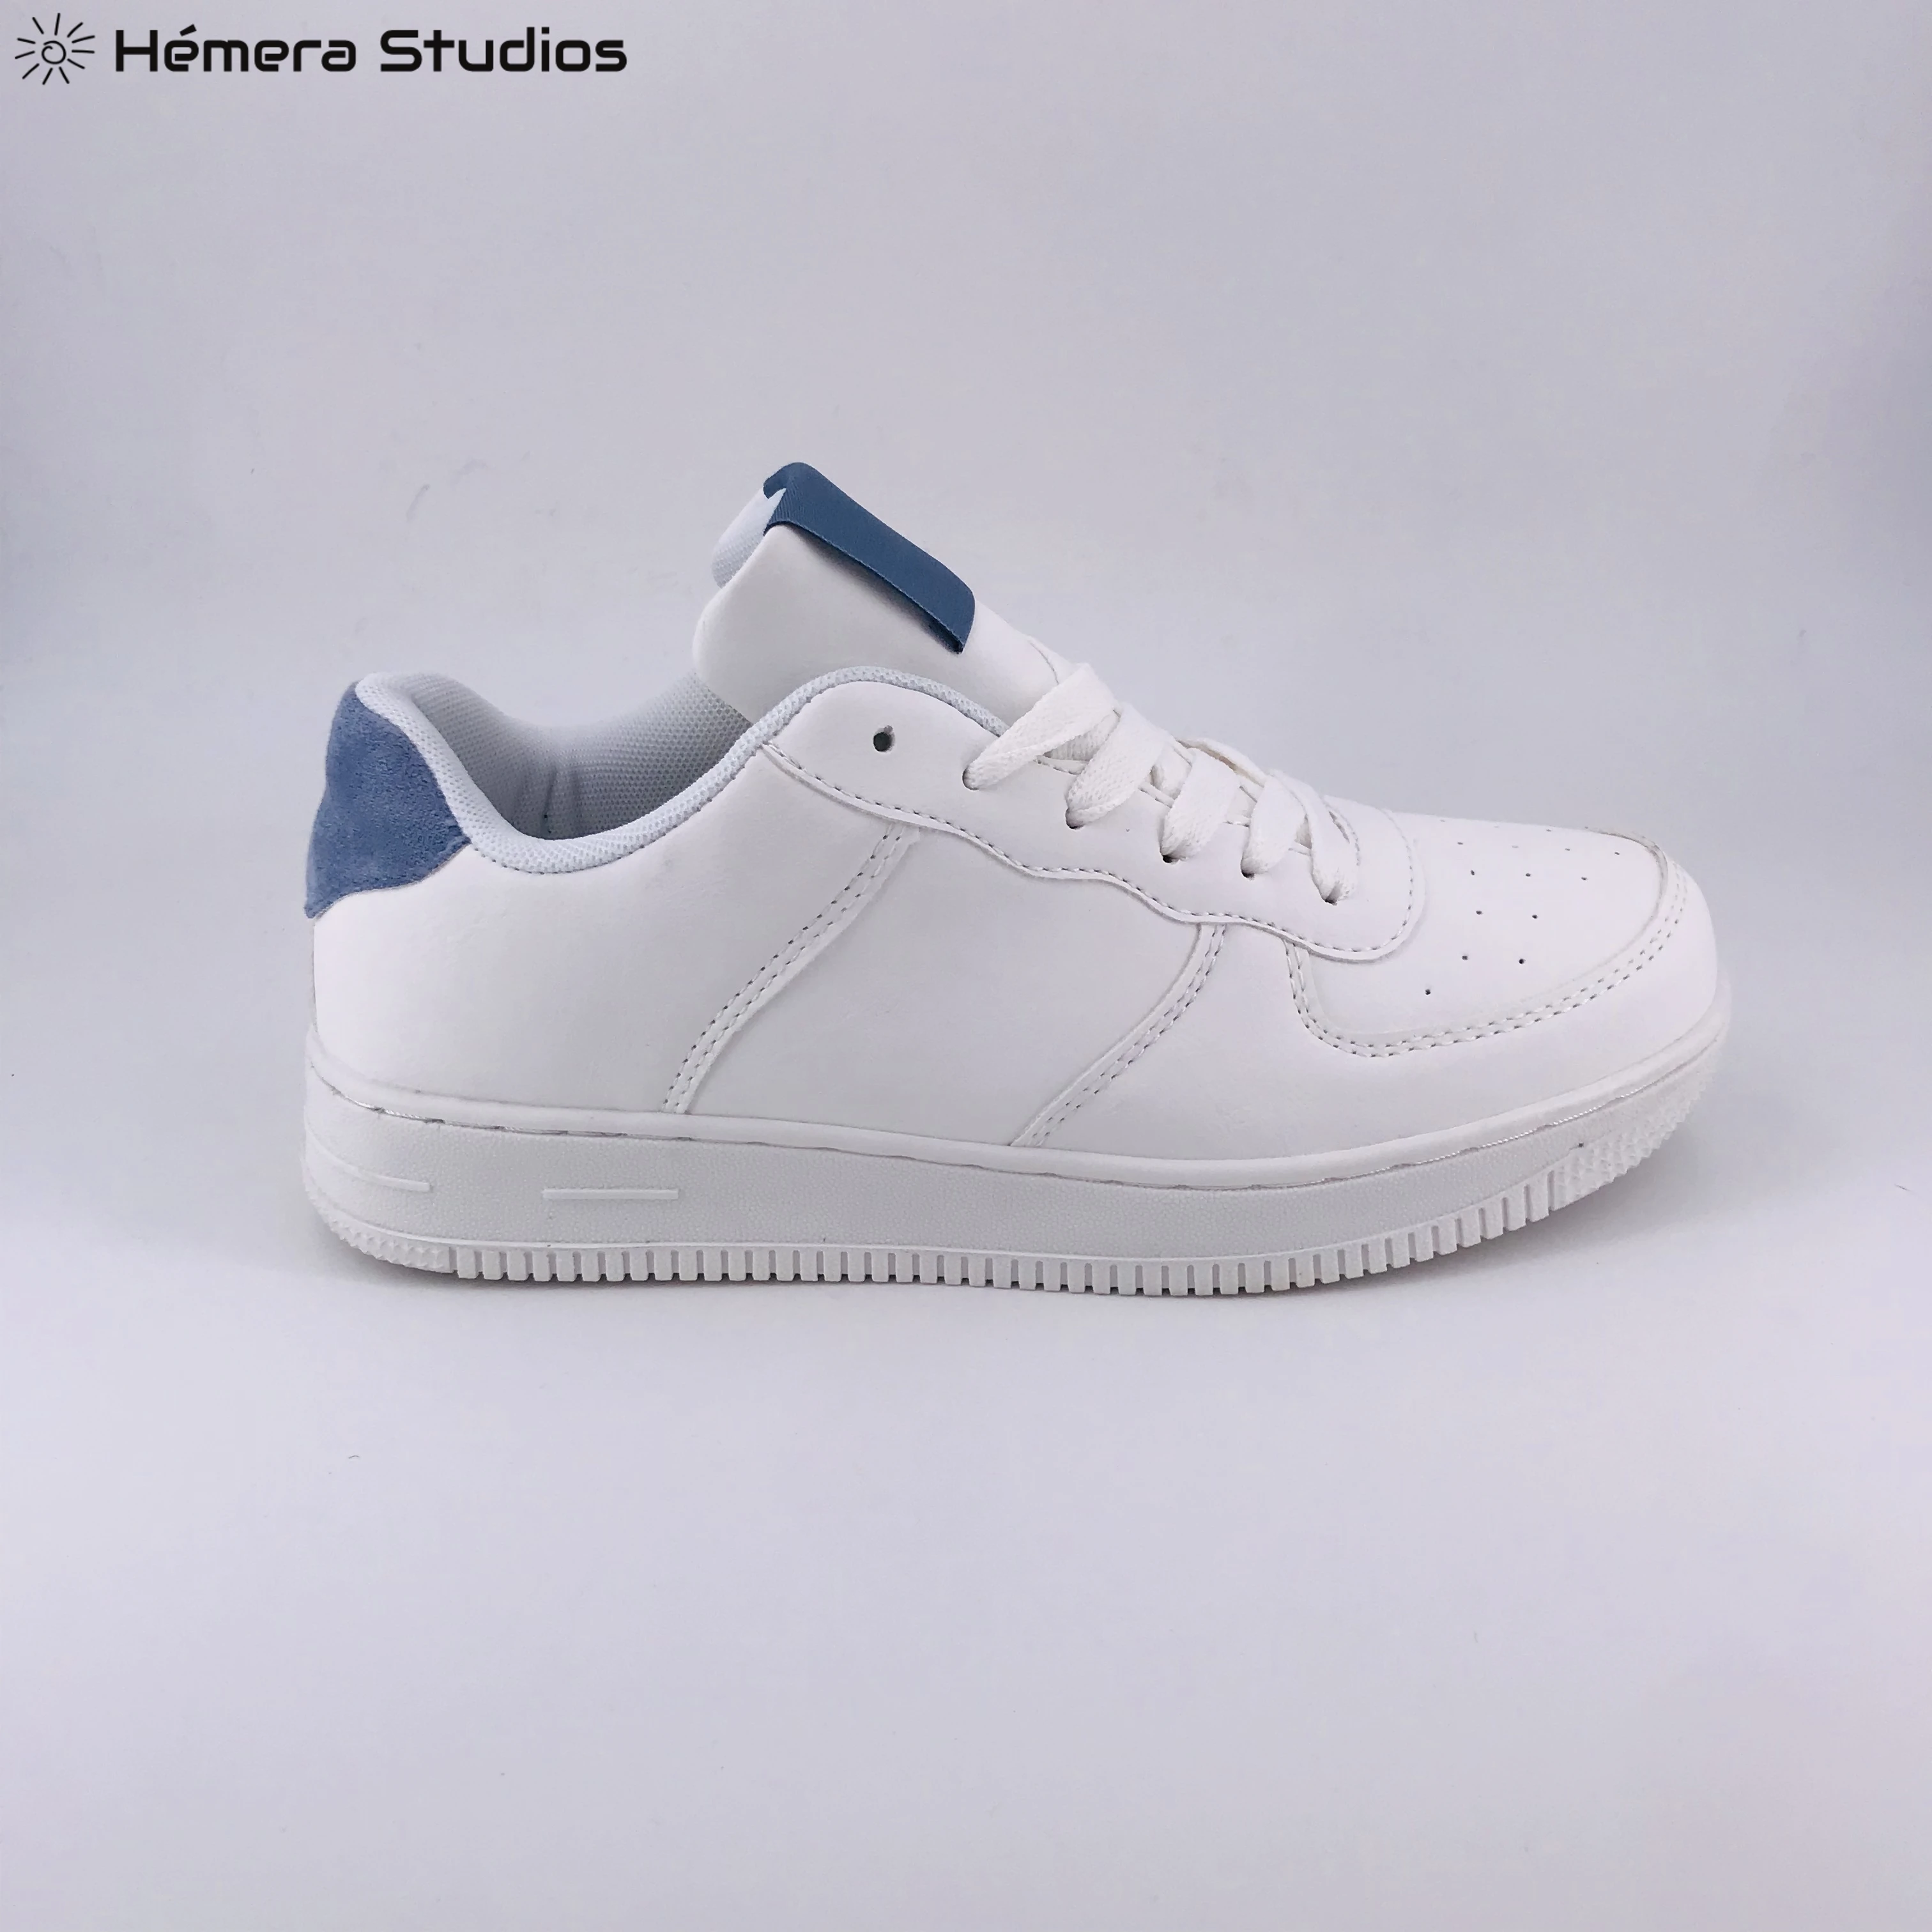 ZAPATILLAS MUJER 2019 Zapatillas deportivos 2019 a la moda con blanca para zapatos casuales de marca de mujer|Zapatillas| AliExpress